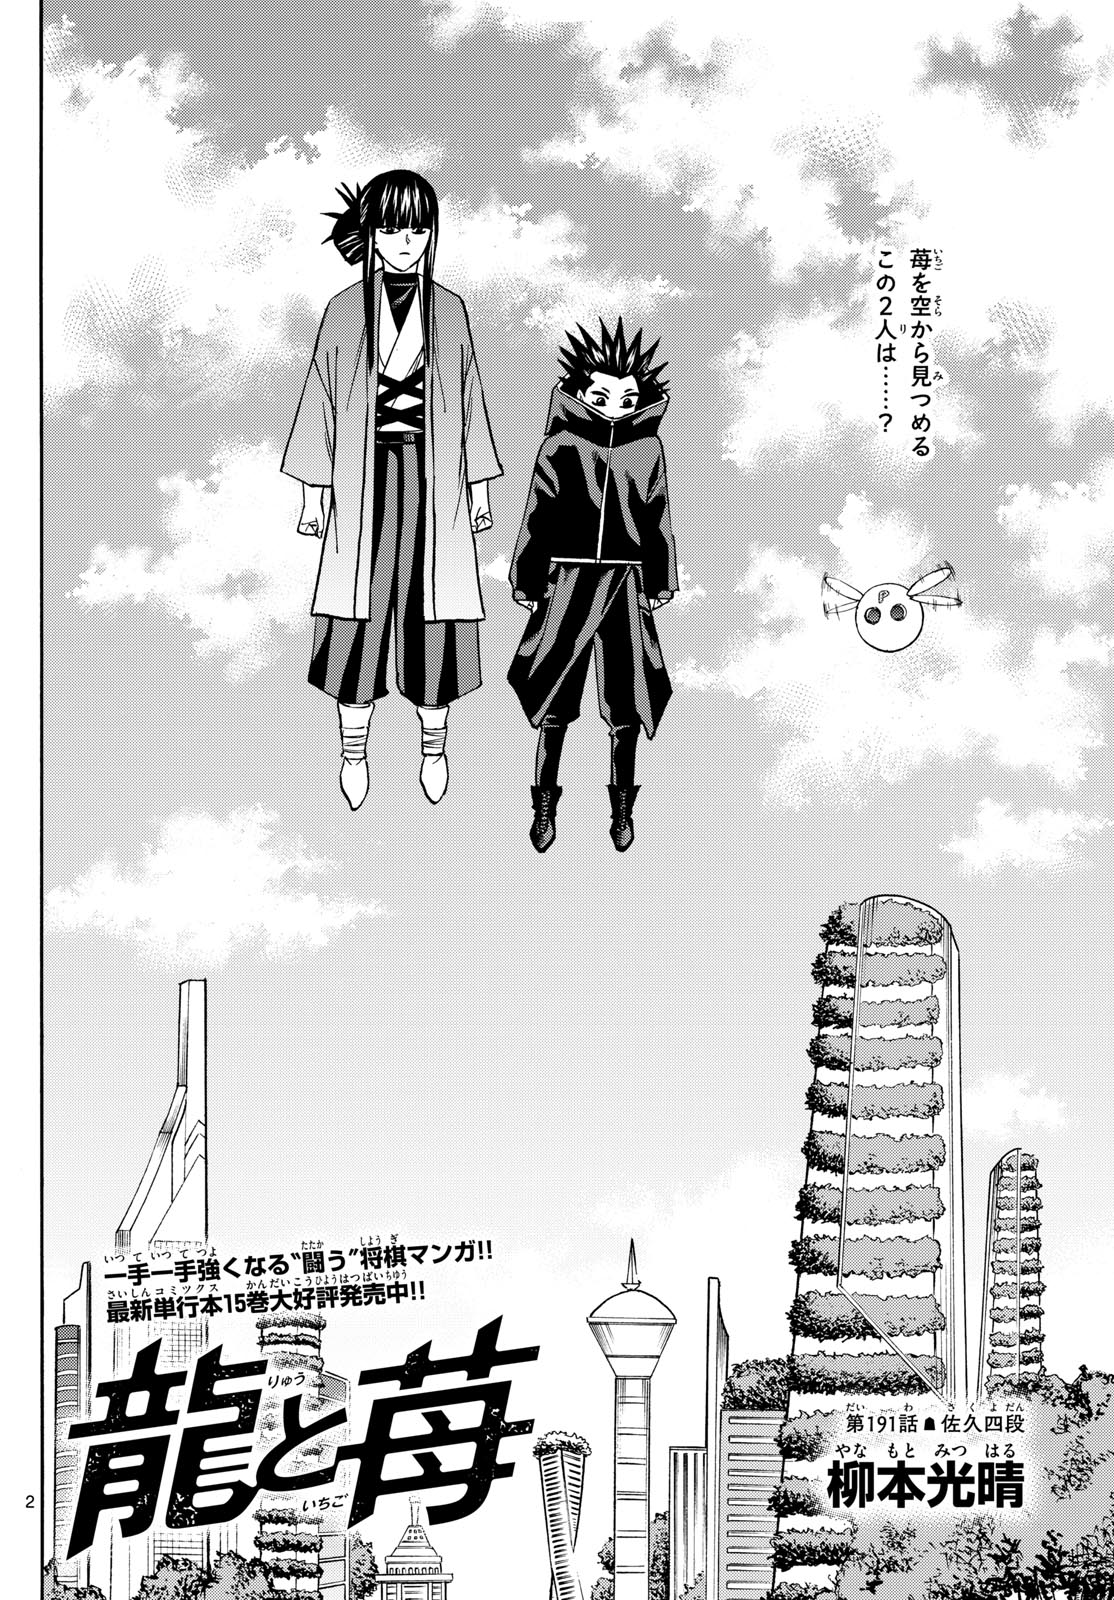 Tatsu to Ichigo - Chapter 191 - Page 2